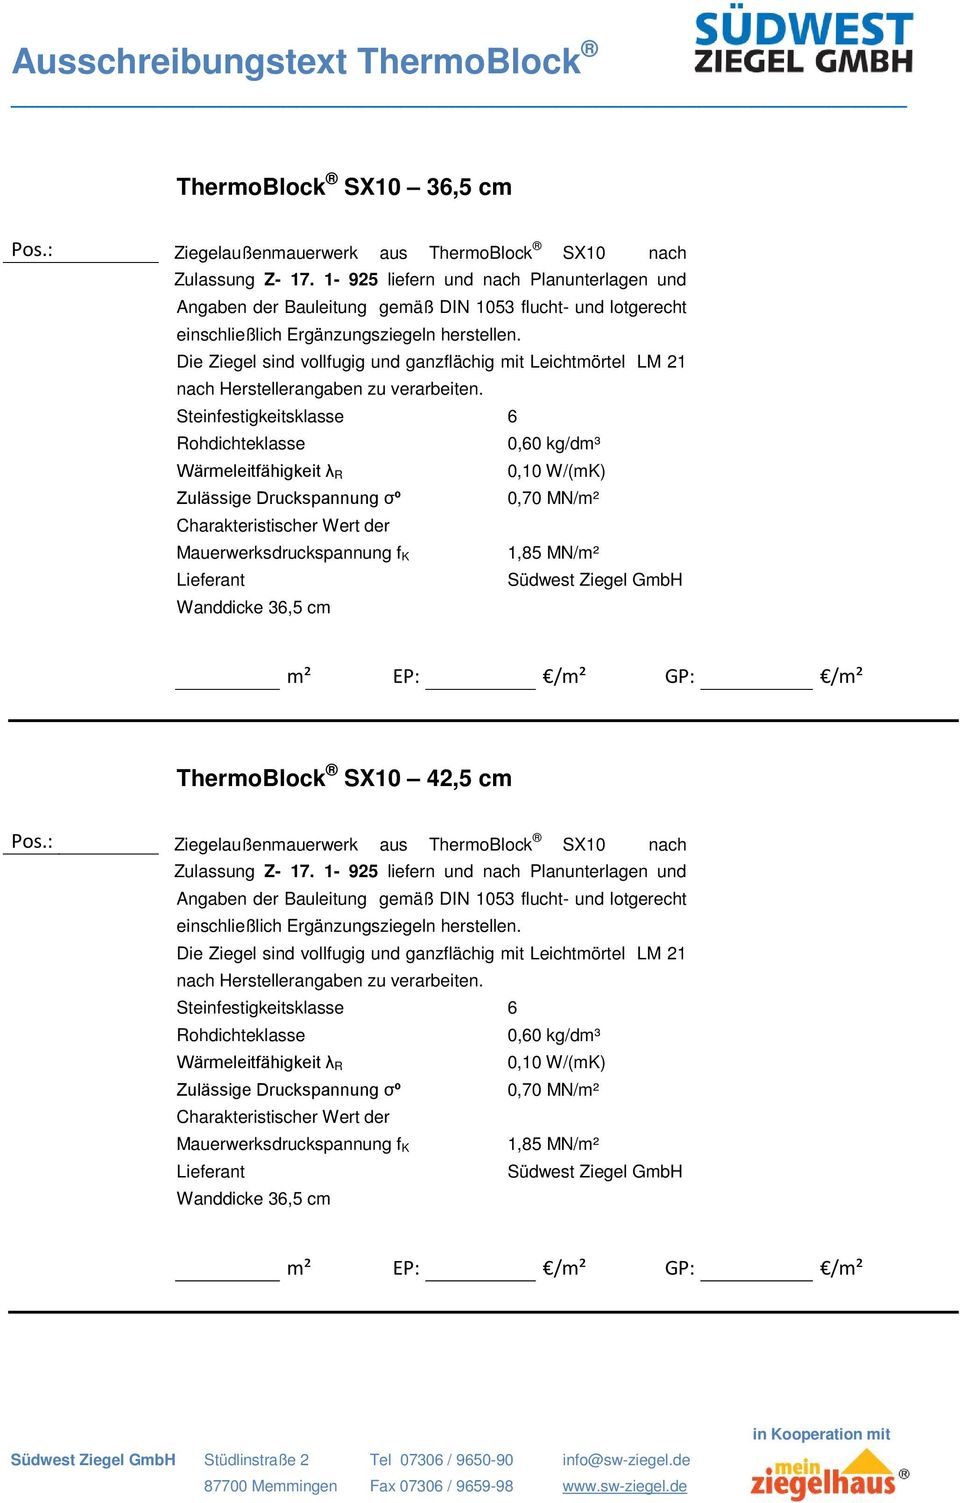 Steinfestigkeitsklasse 6 0,60 kg/dm³ 0,10 W/(mK) 0,70 MN/m² 1,85 MN/m² Wanddicke 36,5 cm ThermoBlock SX10 42,5 cm Ziegelaußenmauerwerk aus ThermoBlock SX10 nach Zulassung Z- 17.